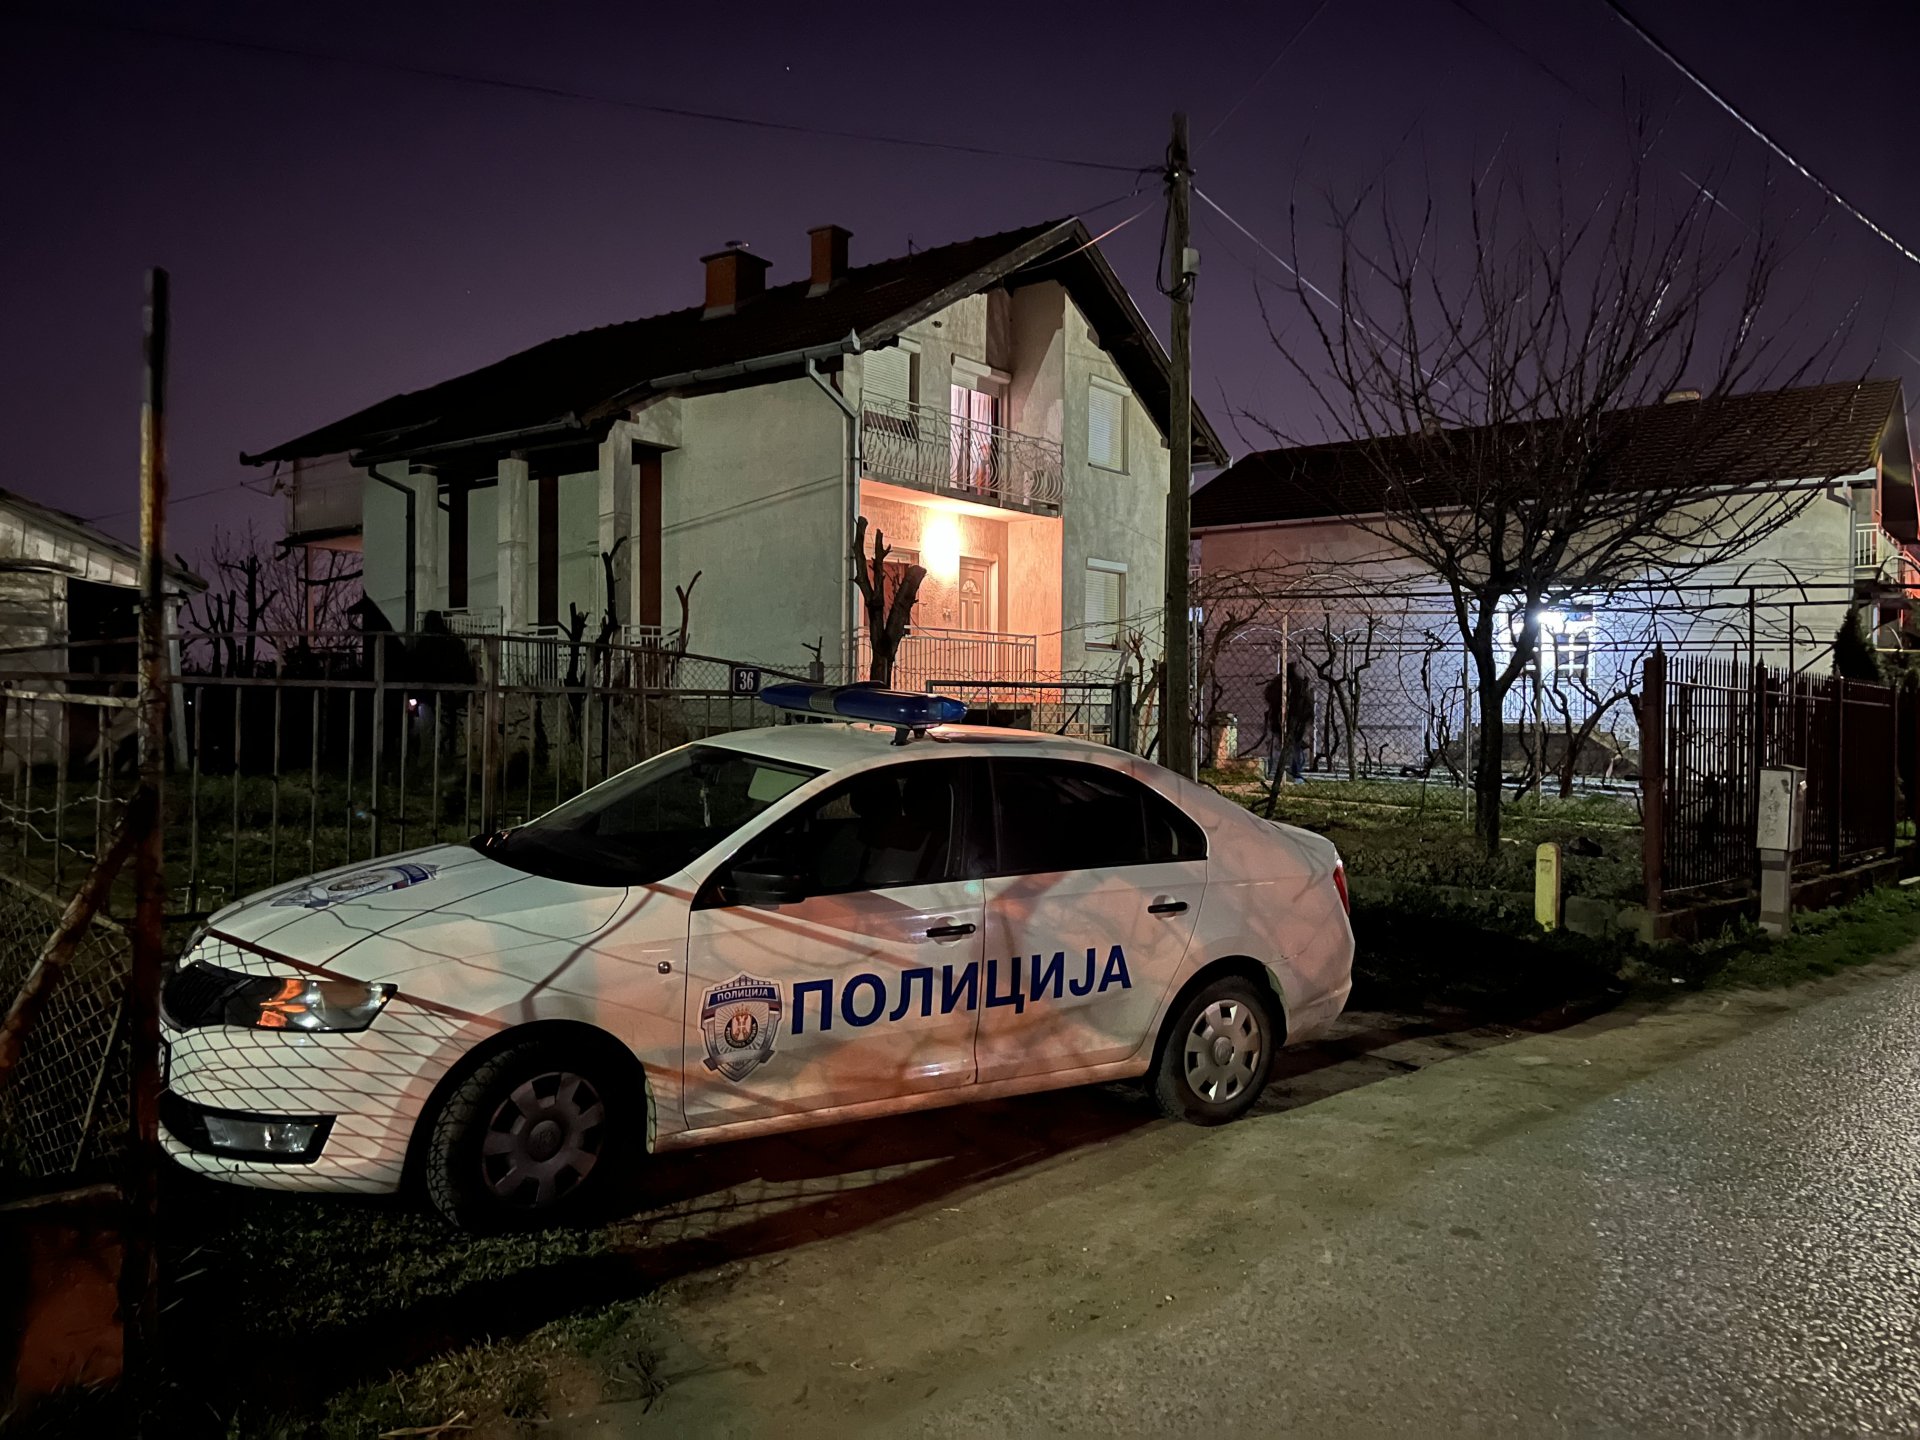 Užasavajući detalji tragedije u Novom Sadu: Sumnja se da je bračni par koji je sinoć skočio sa zgrade, prije toga ubio sopstvenu djecu